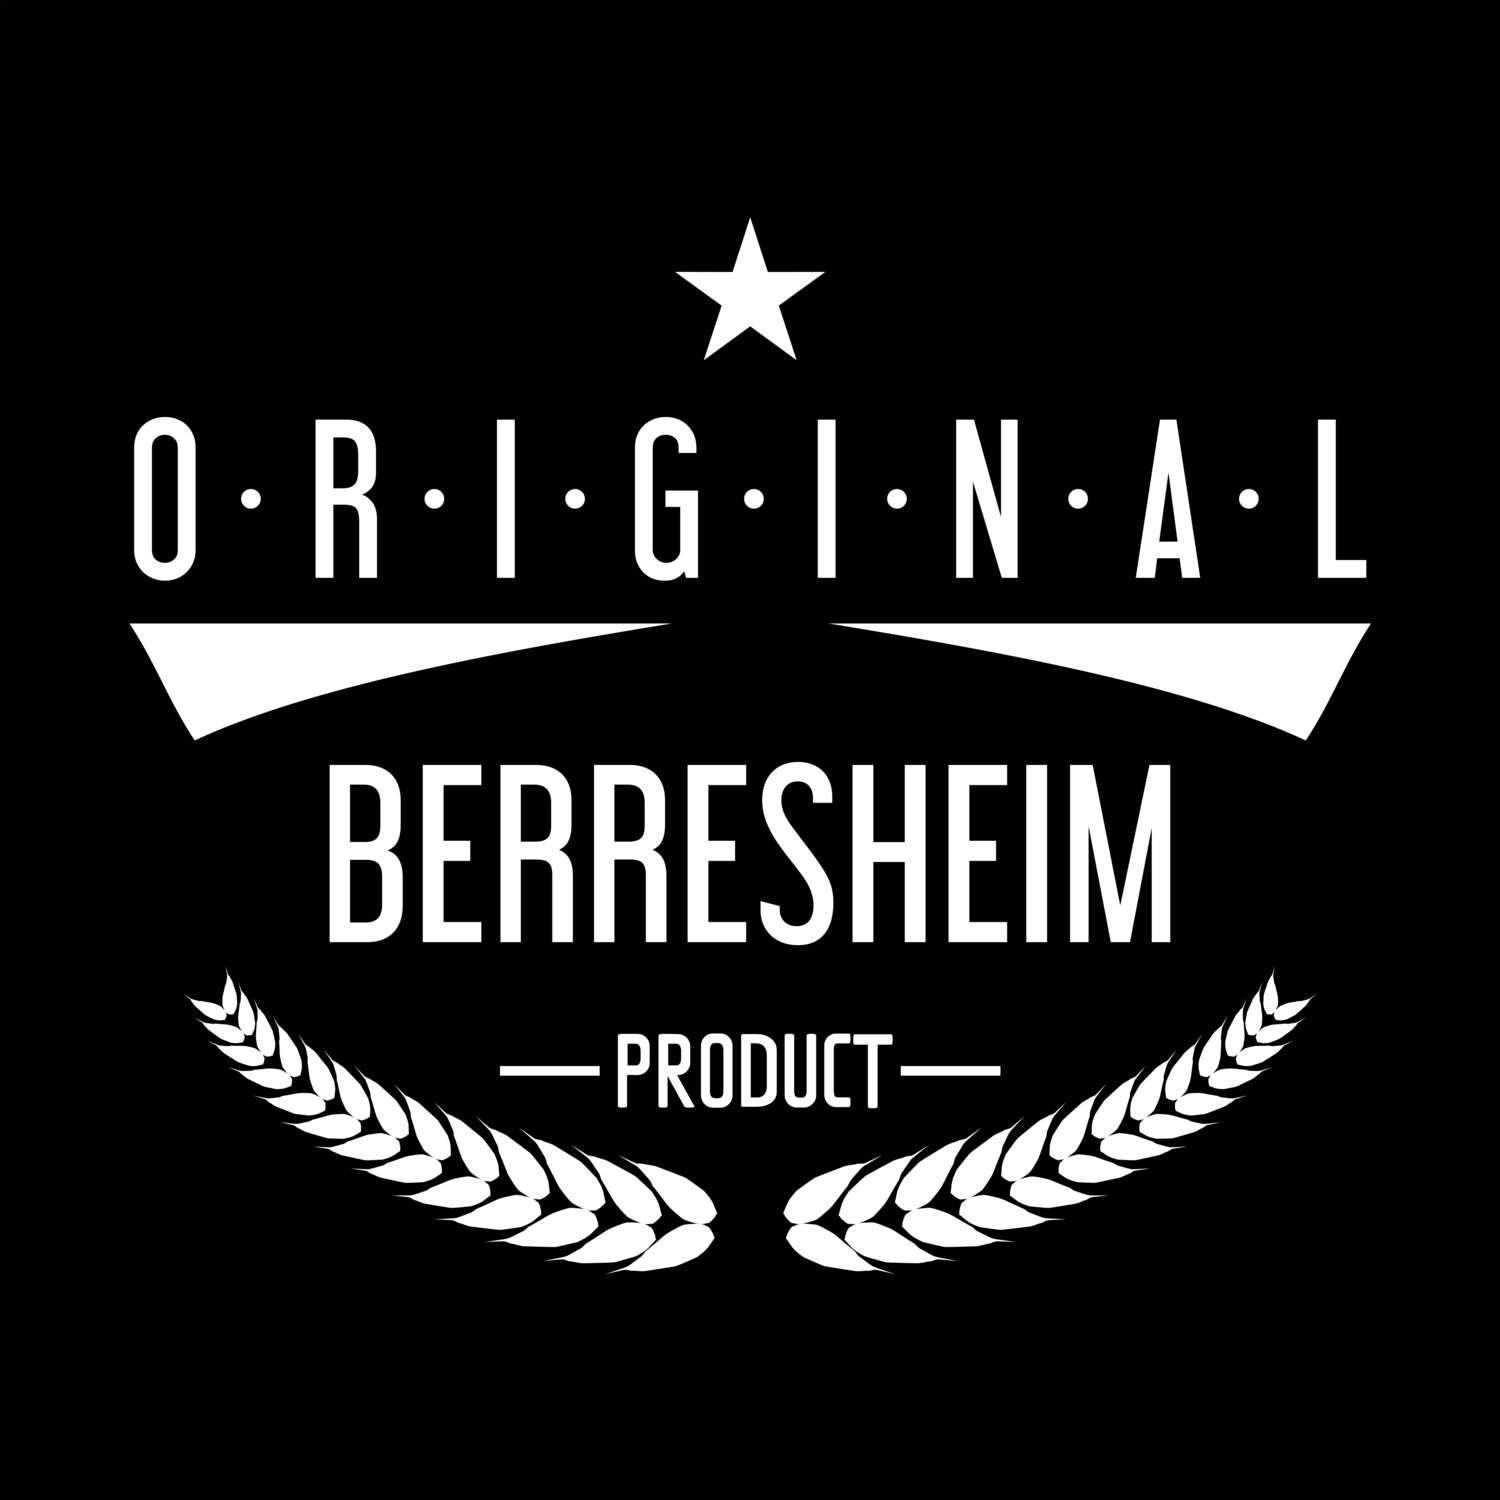 Berresheim T-Shirt »Original Product«